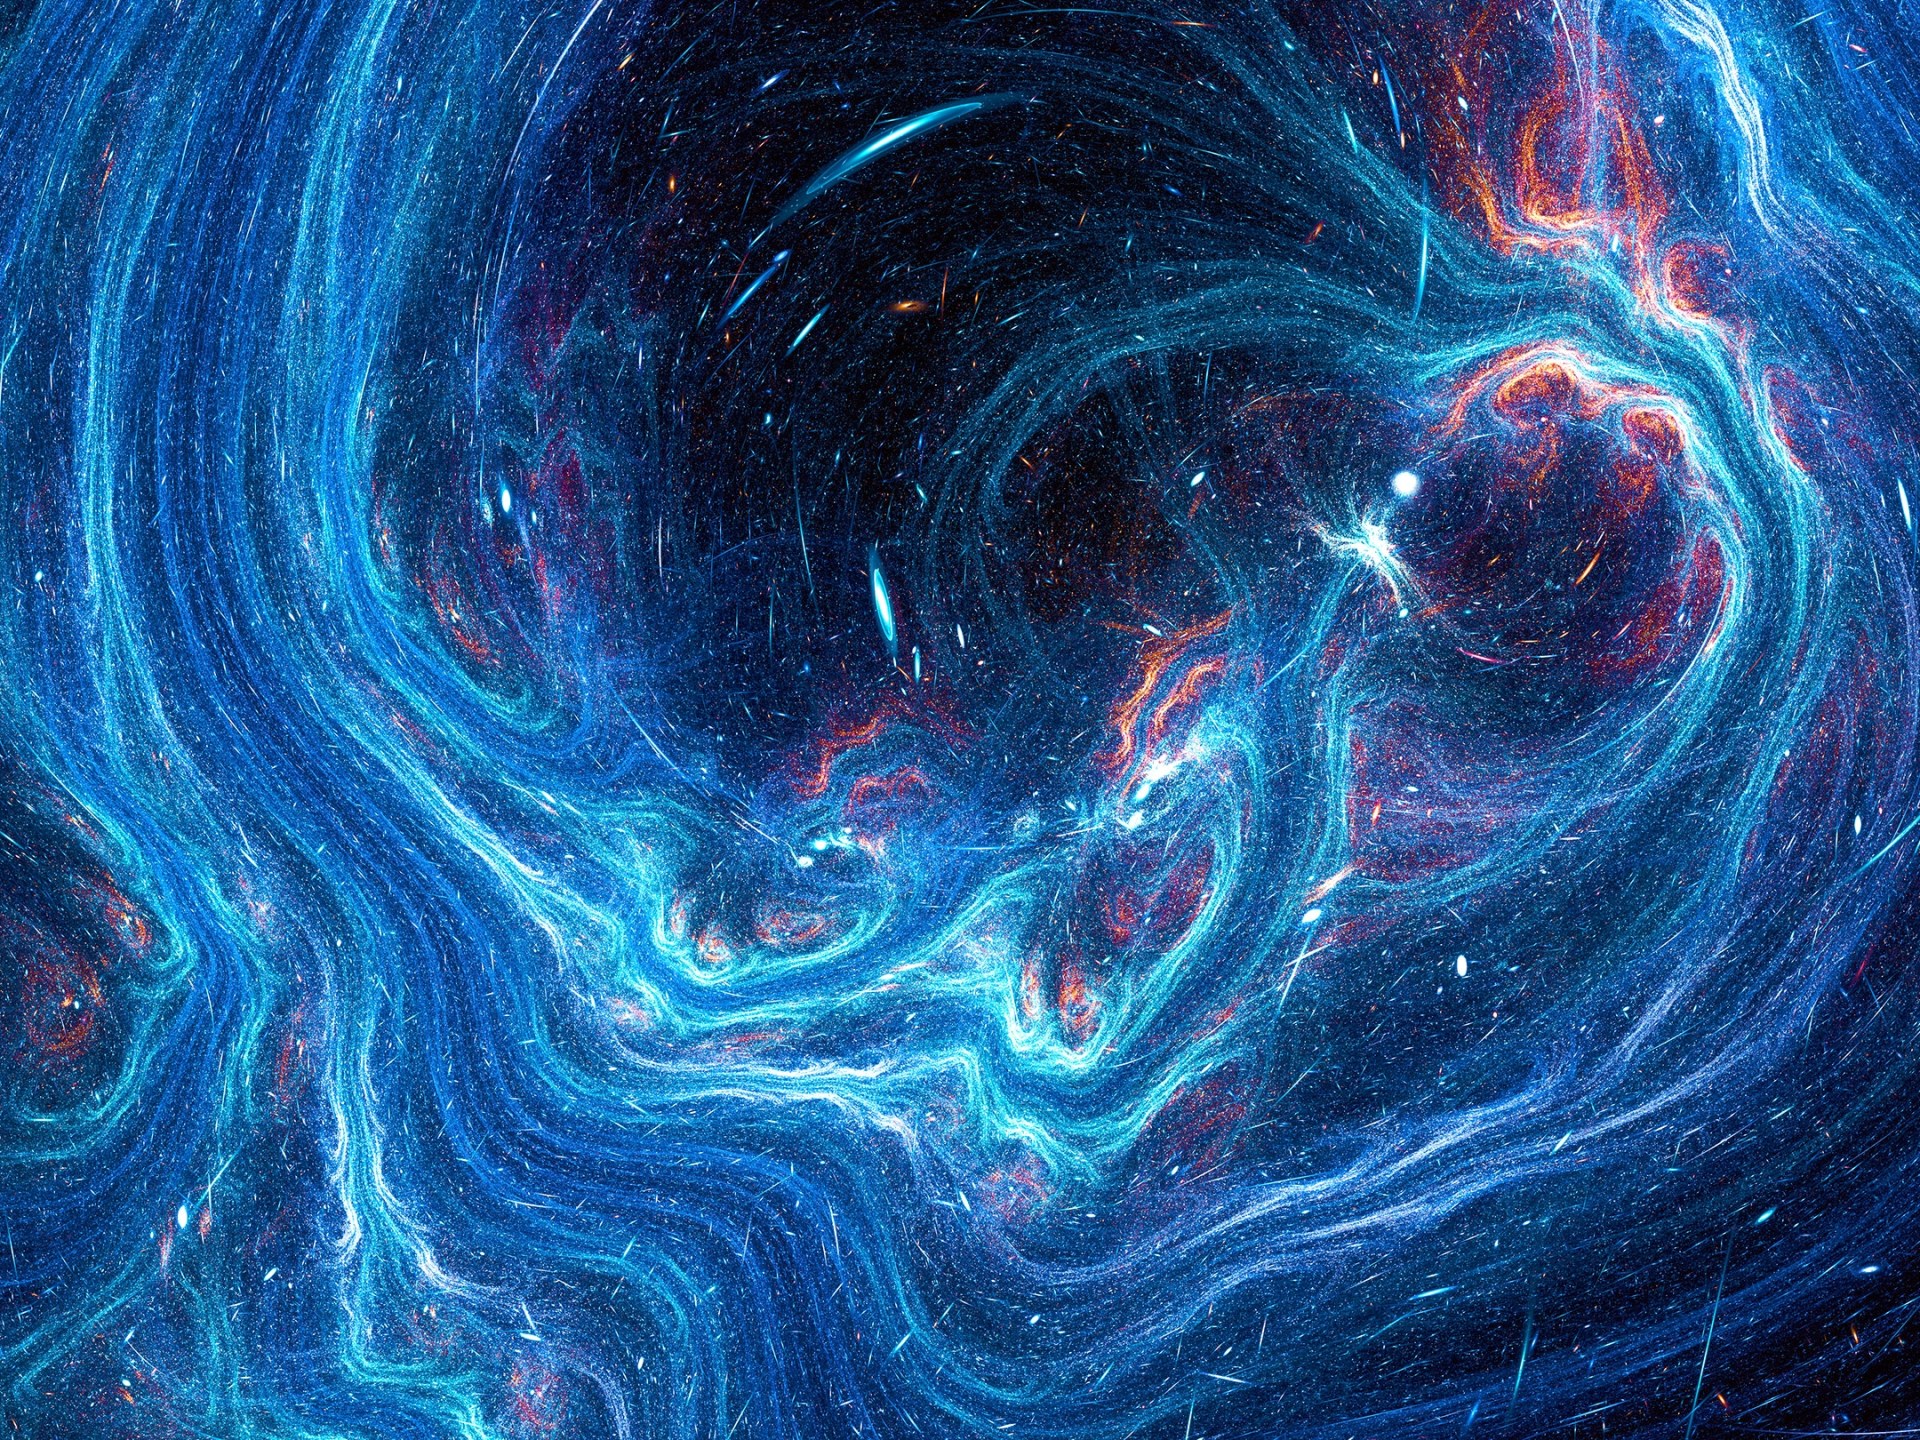 دراسة: الكون لا يحتوي على “المادة المظلمة” | علوم – البوكس نيوز